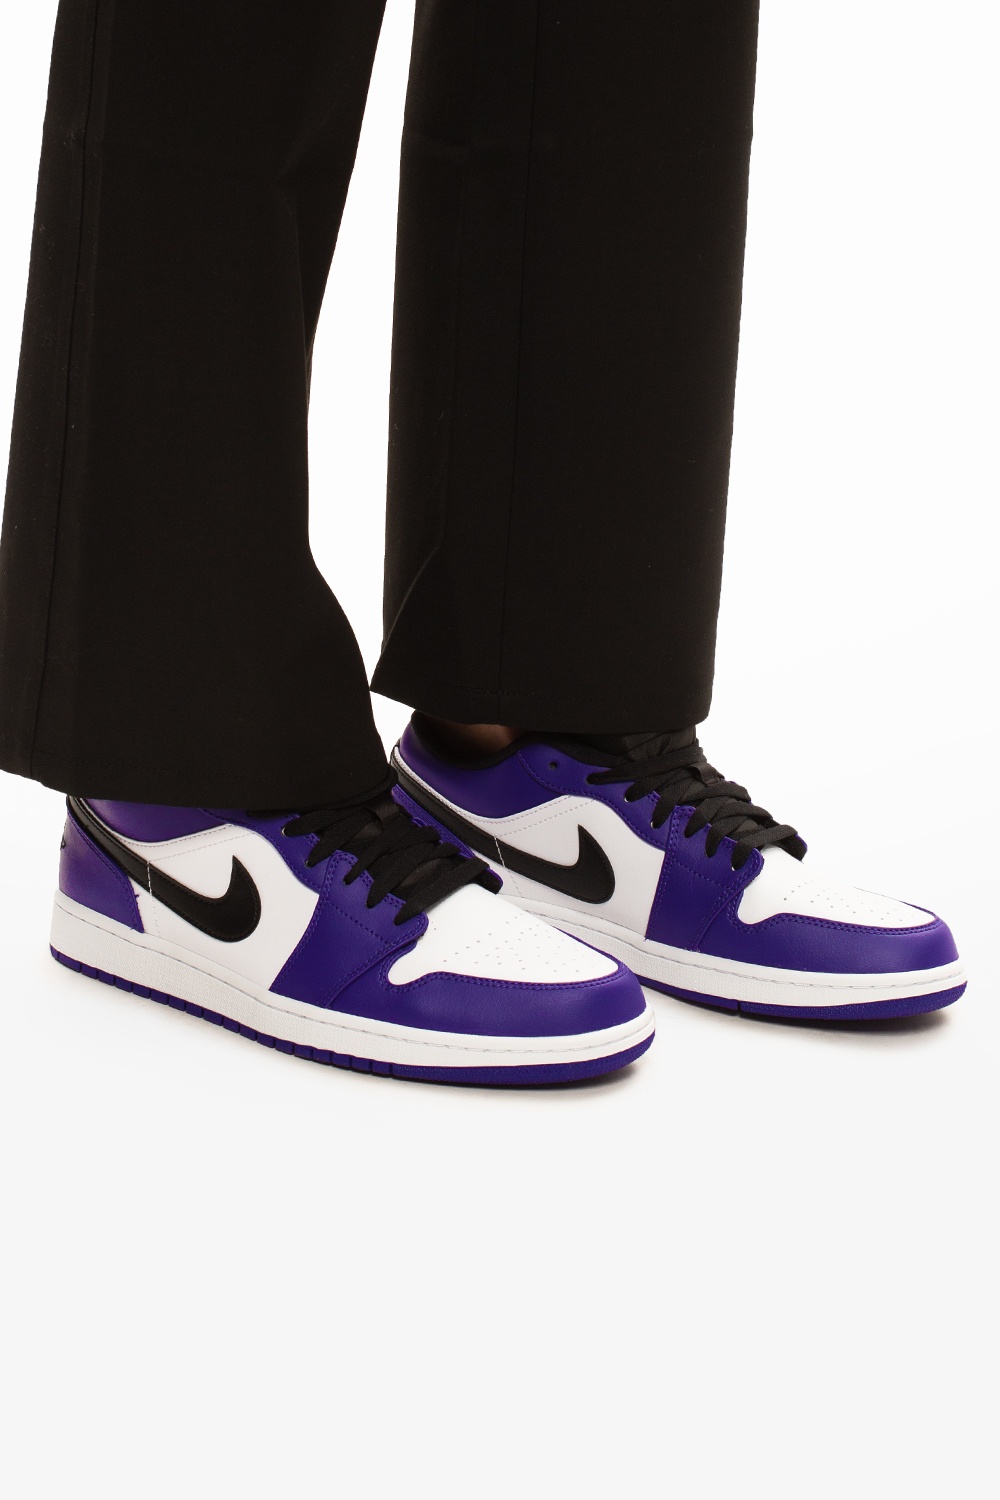 air jordan 1 court purple outfit